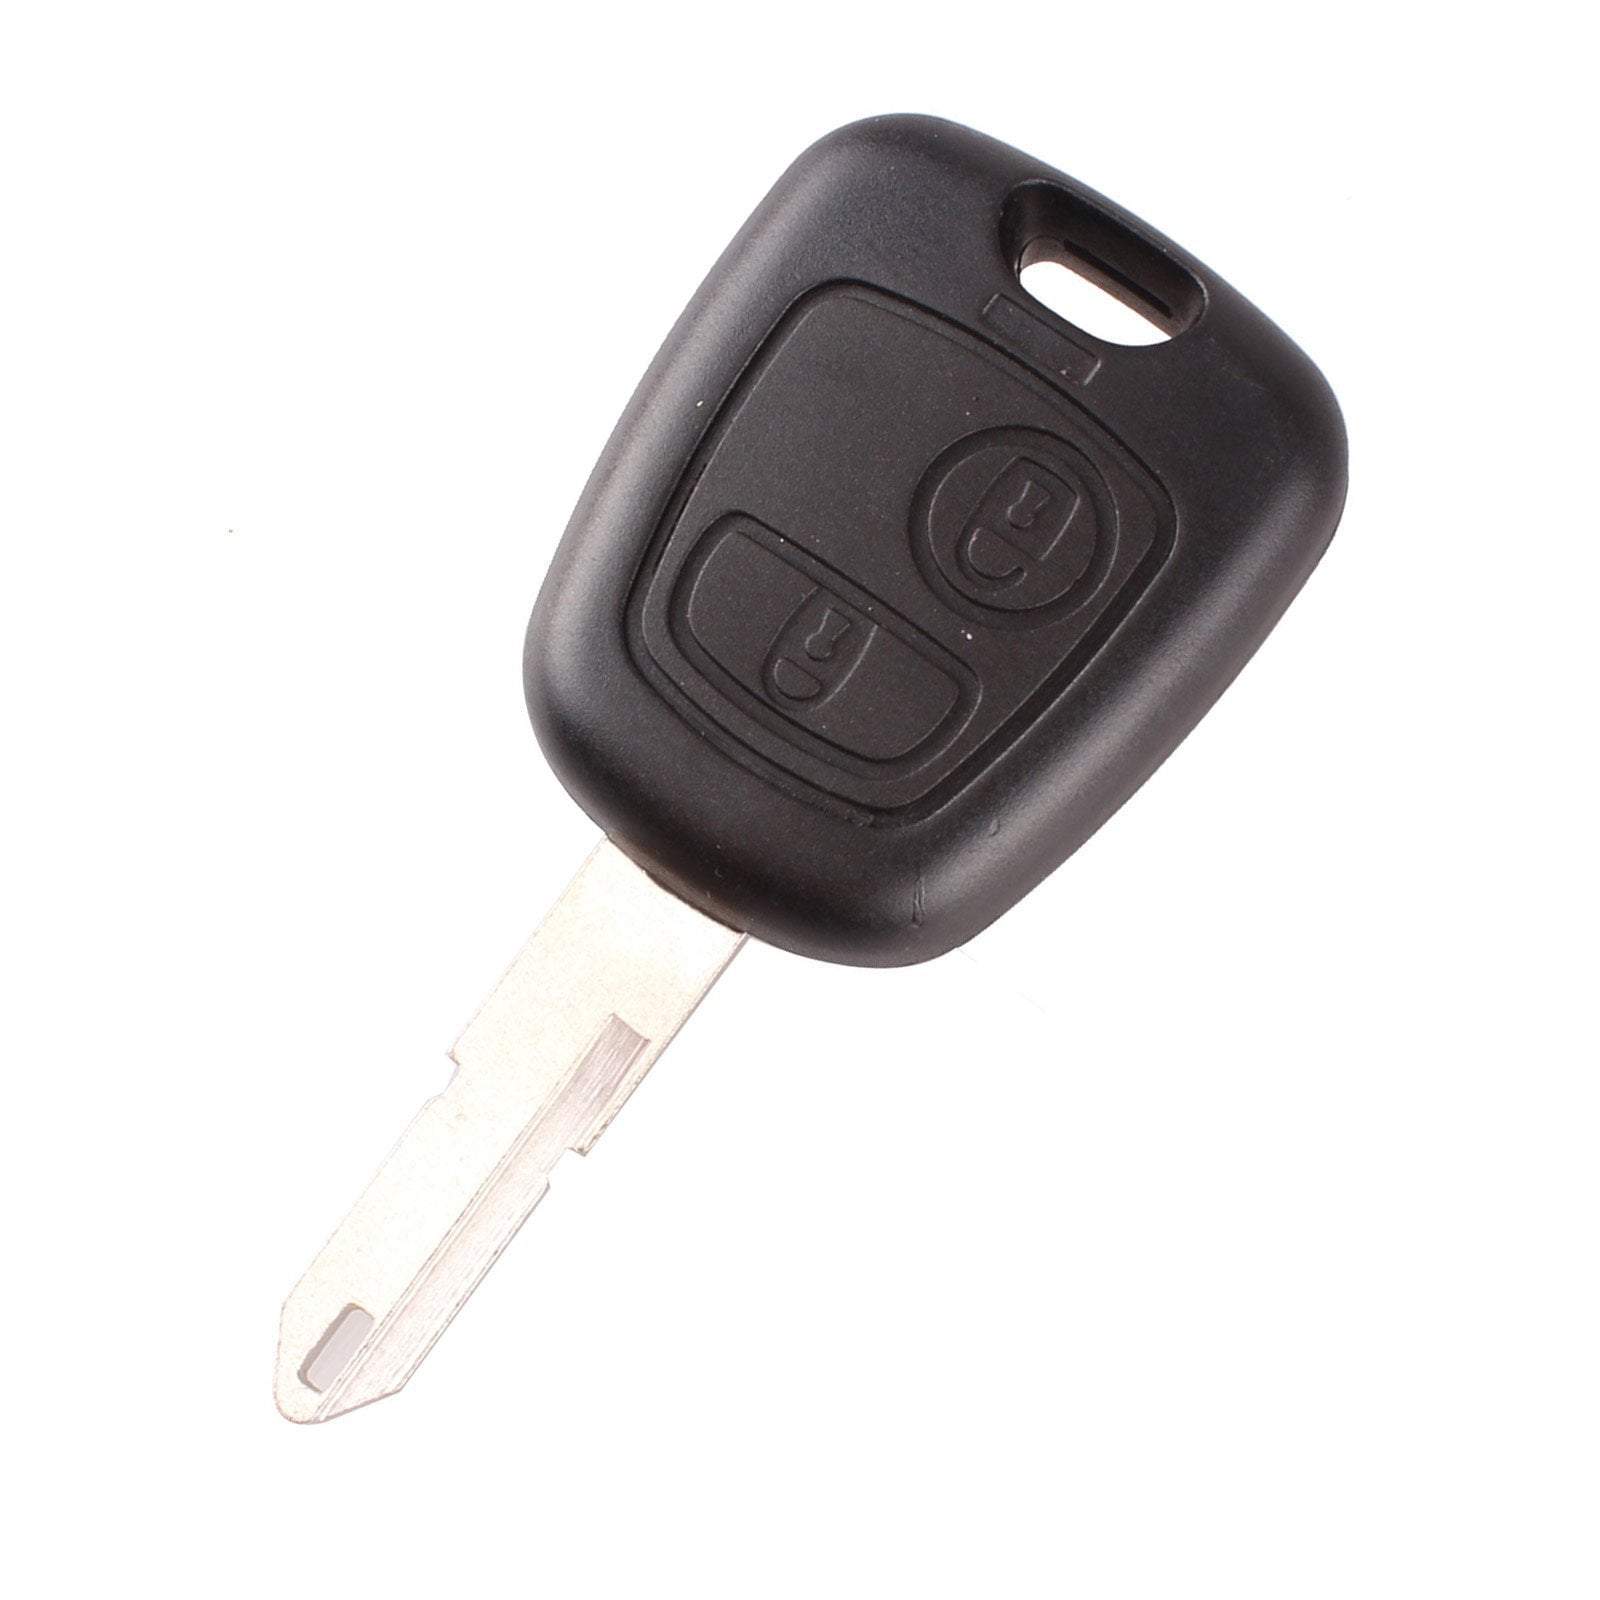 Fekete színű, 2 gombos Peugeot kulcs, kulcsház VA3 kulcsszárral.